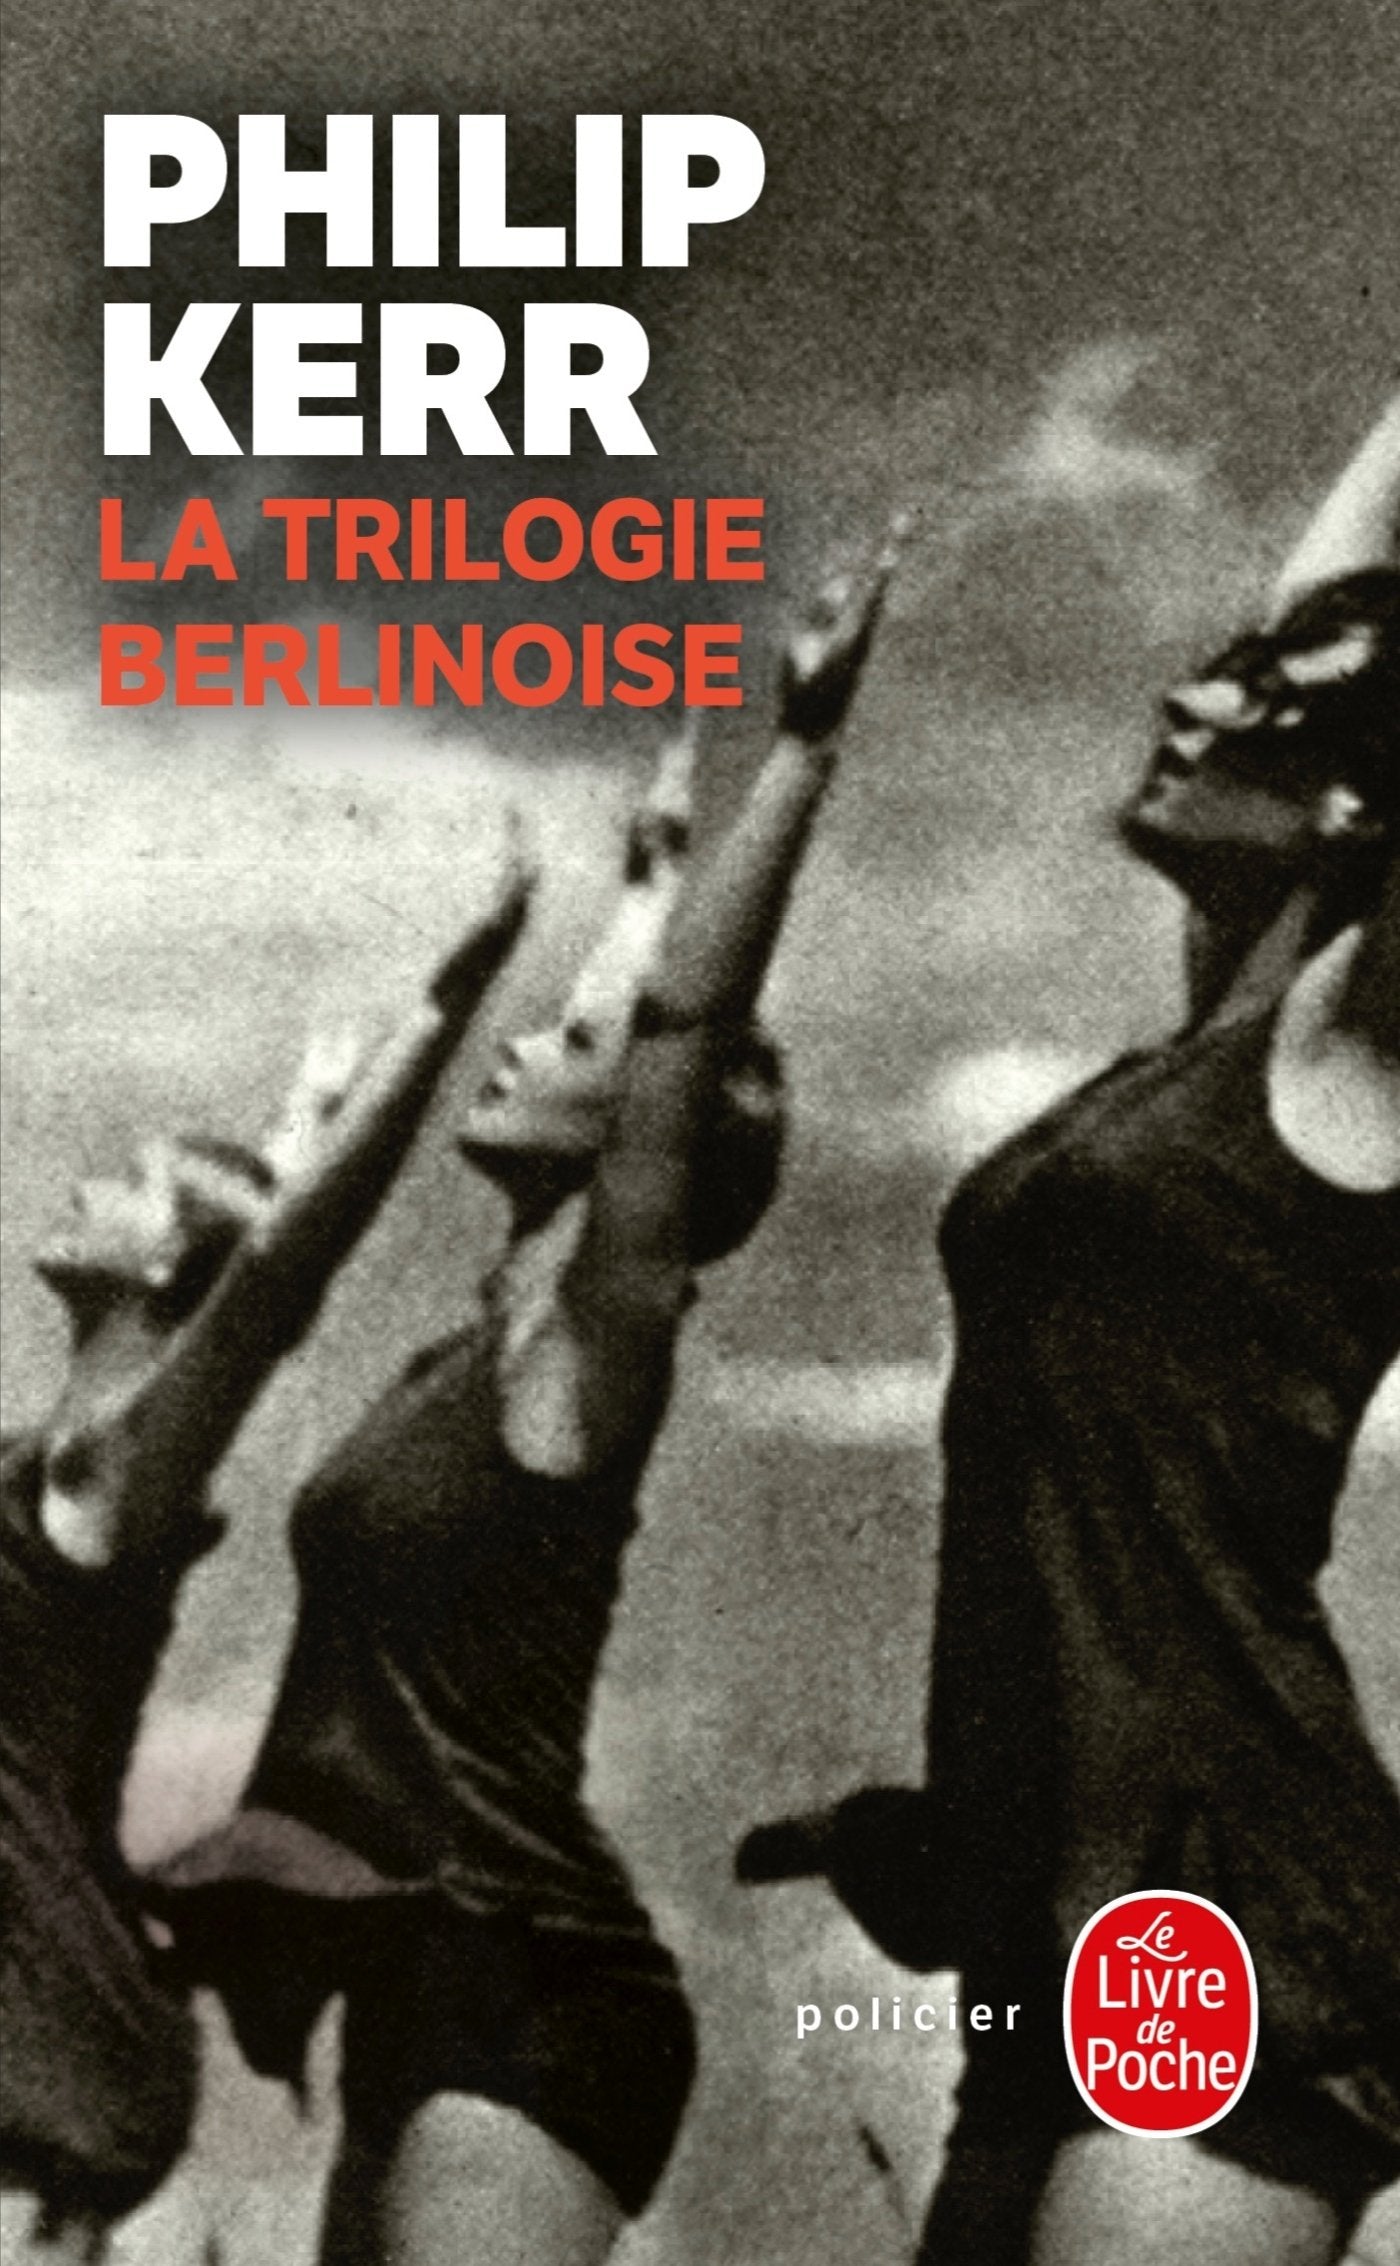 Livre ISBN 2253128430 La trilogie berlinoise (Philip Kerr)